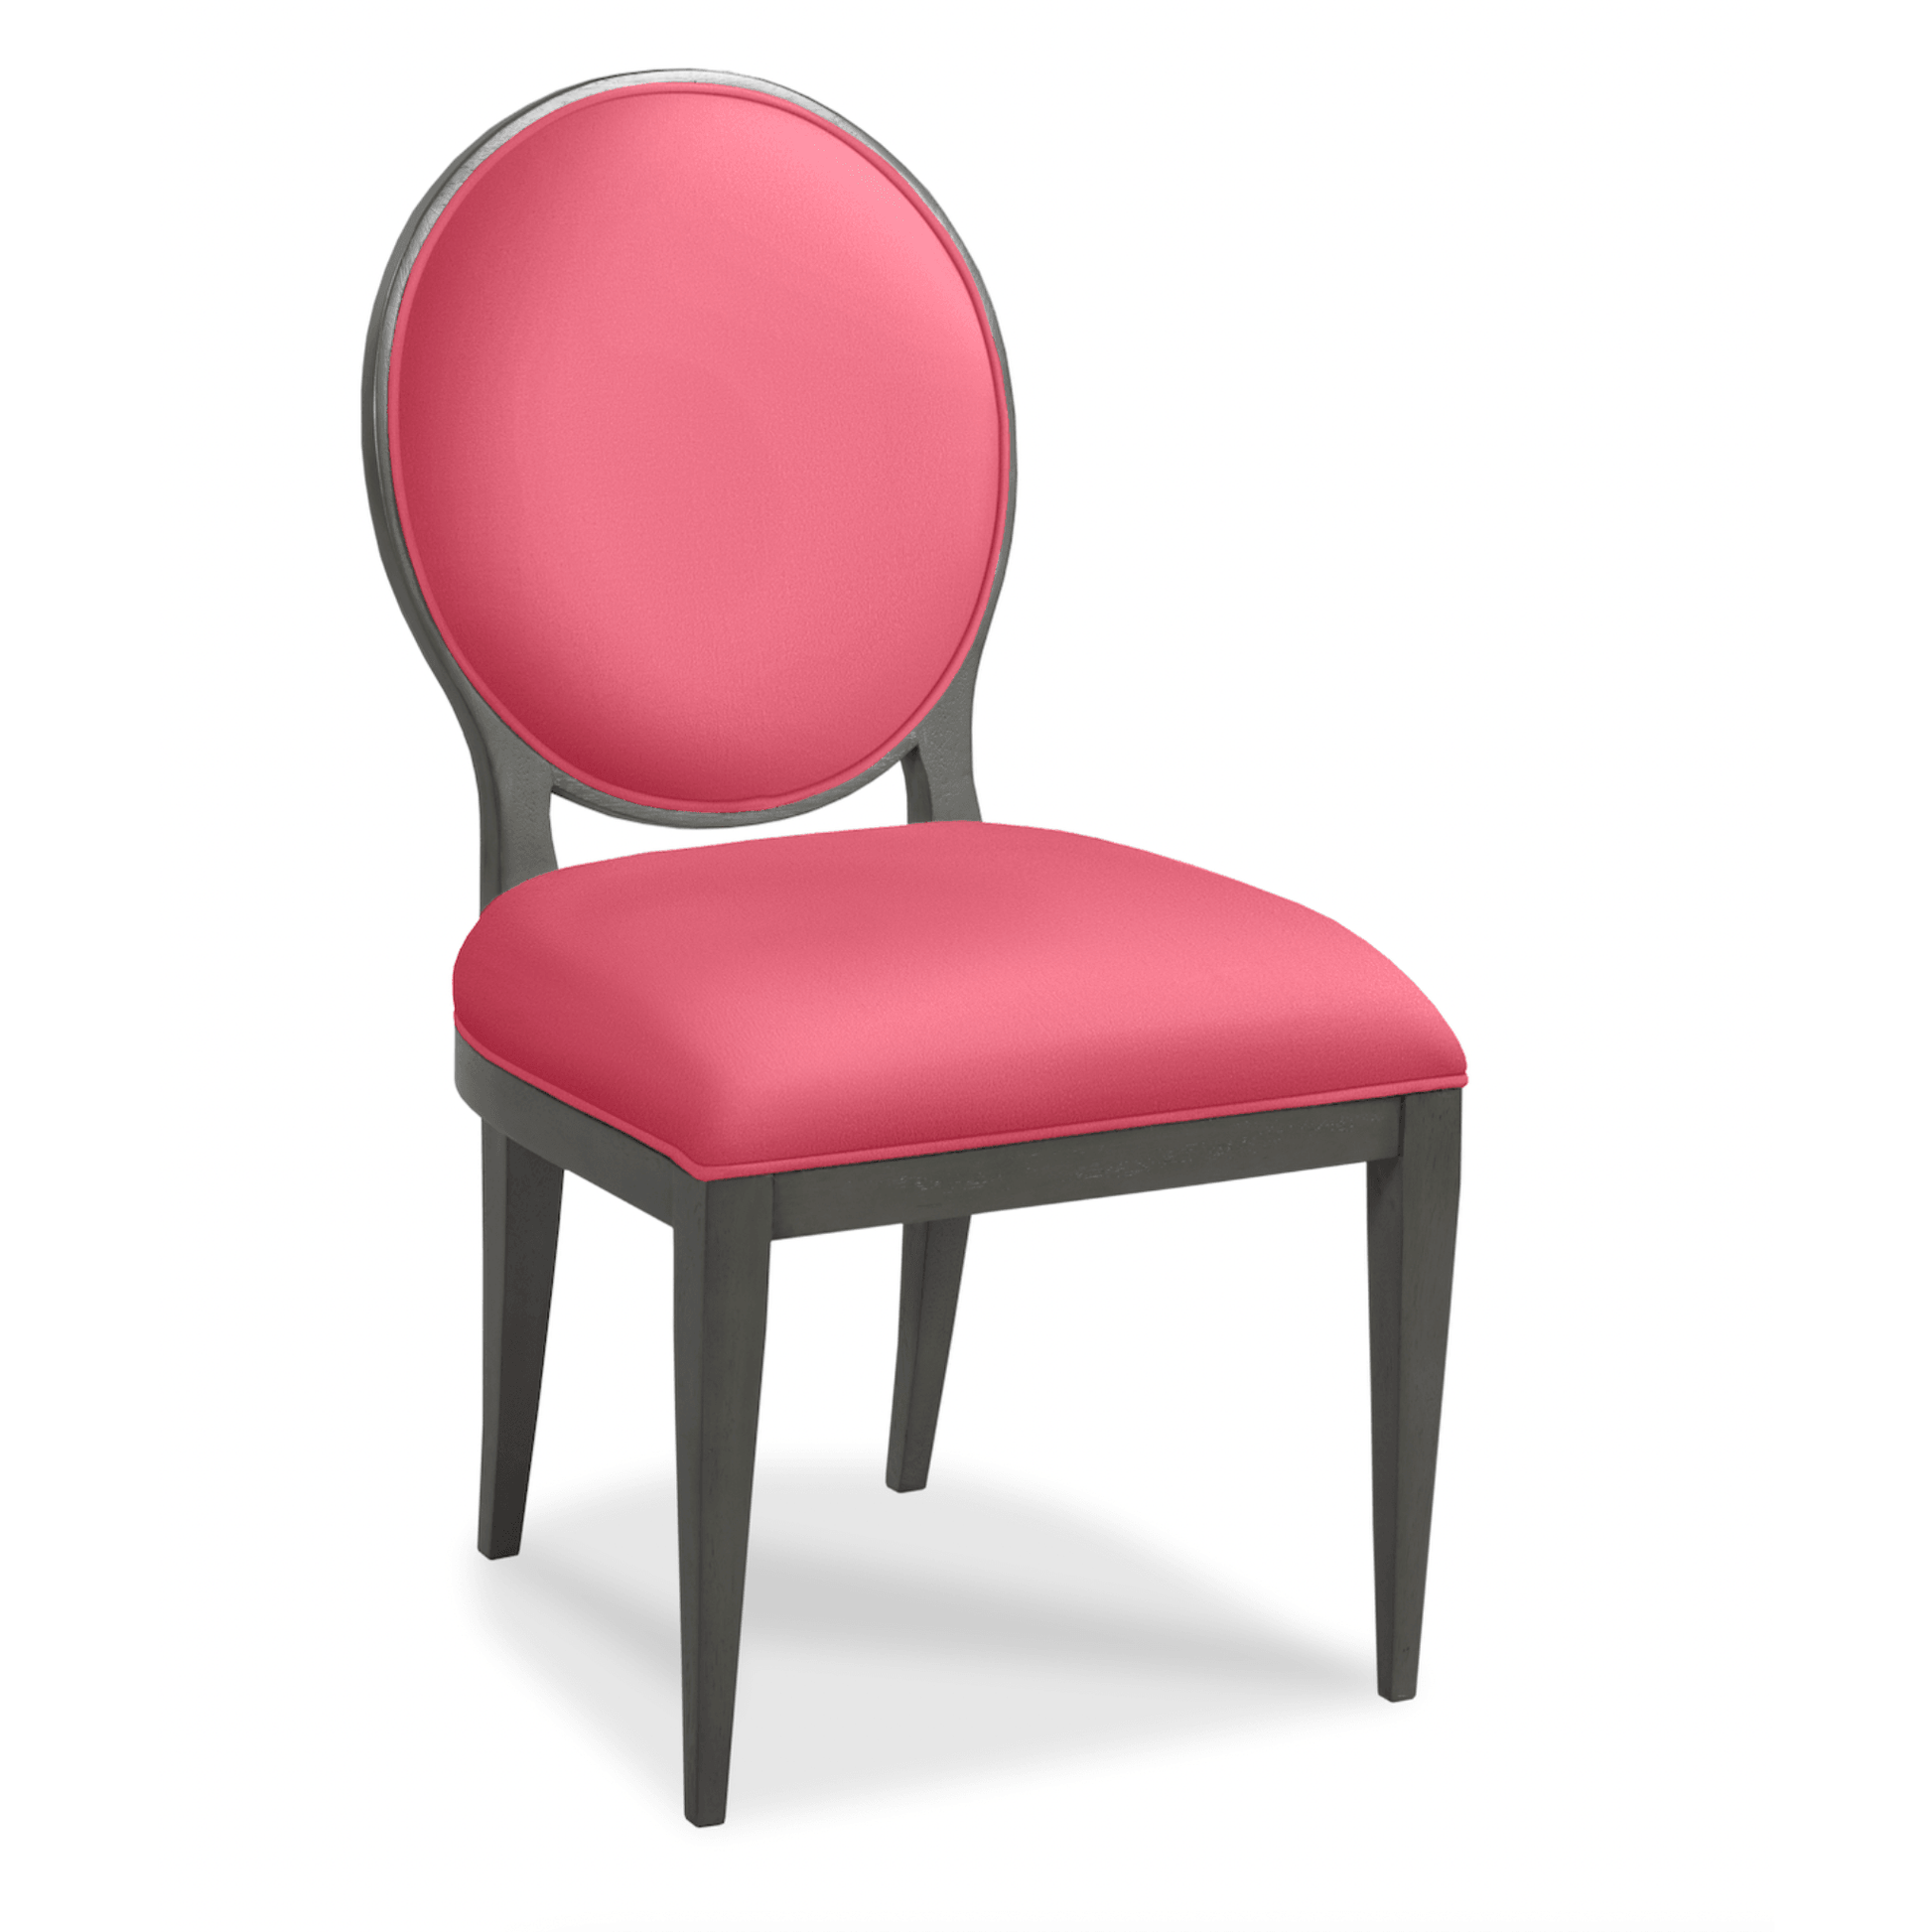 Ovale Side Chair - Fairley Fancy 